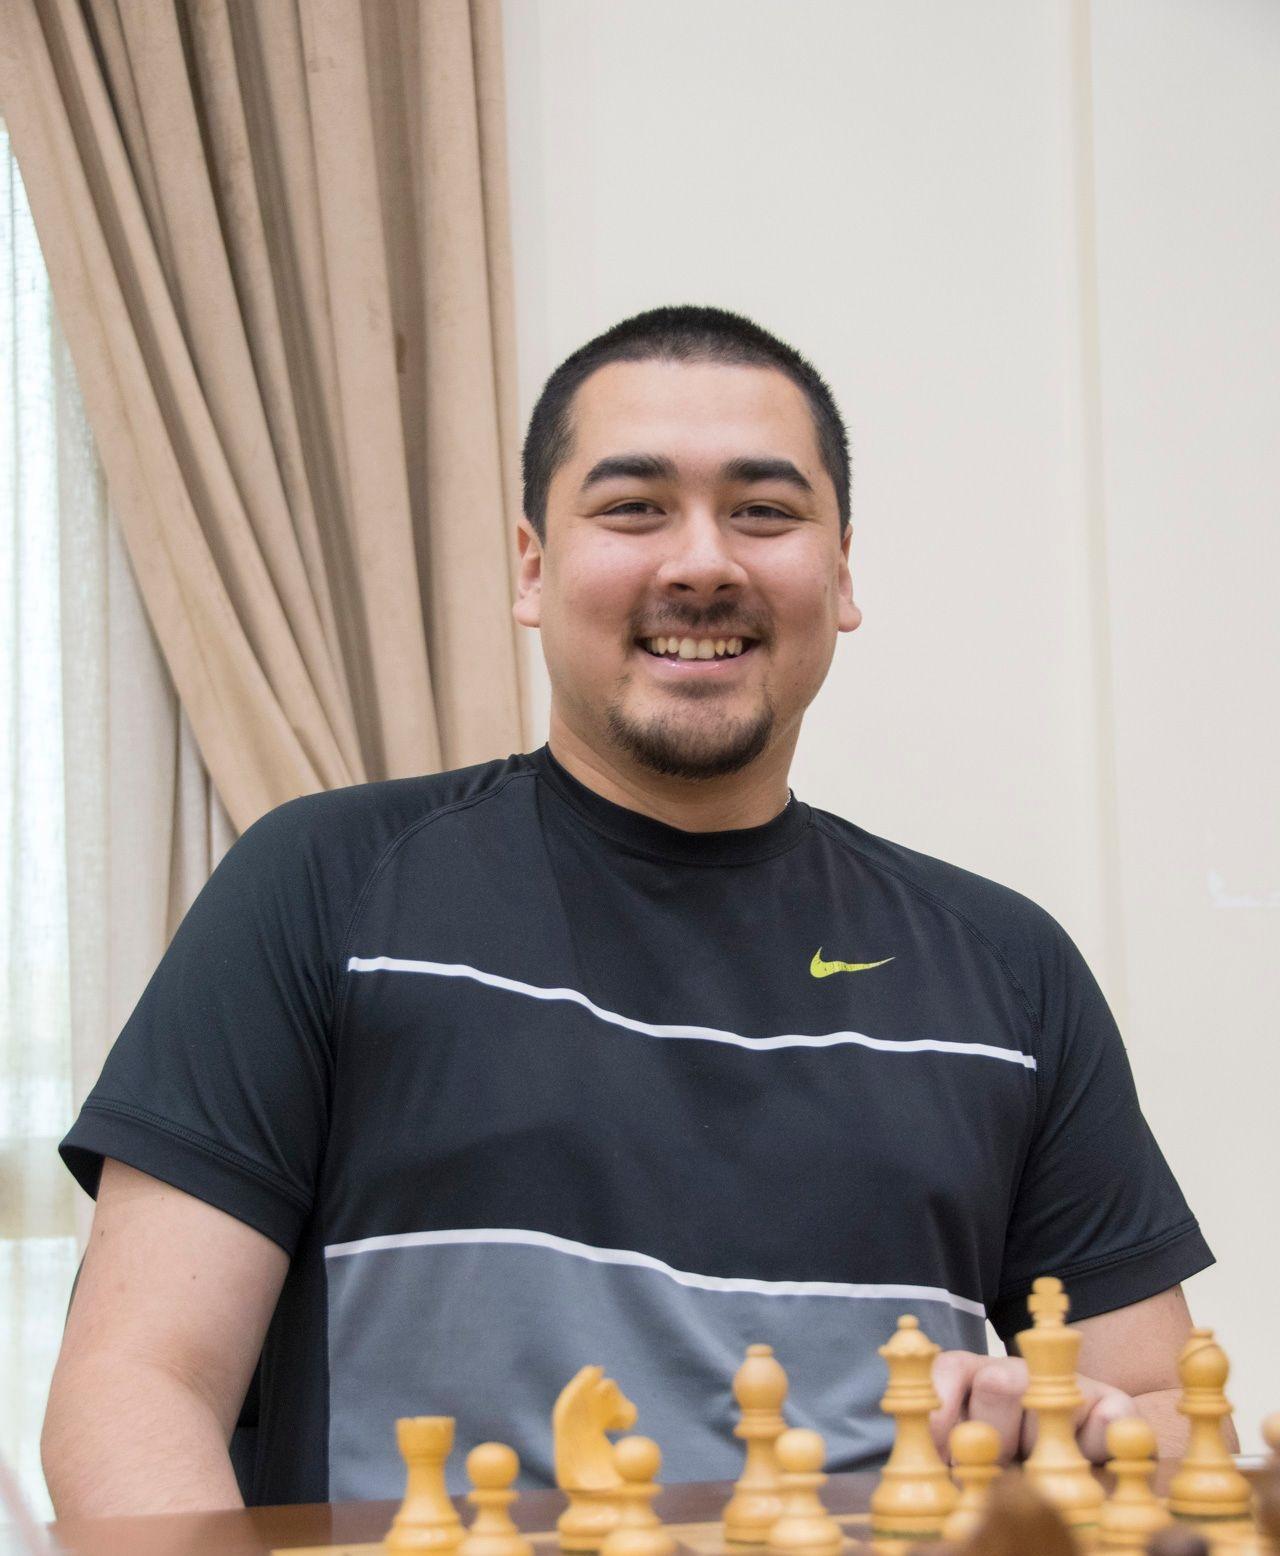 Alexandr Fier  Top Chess Players 